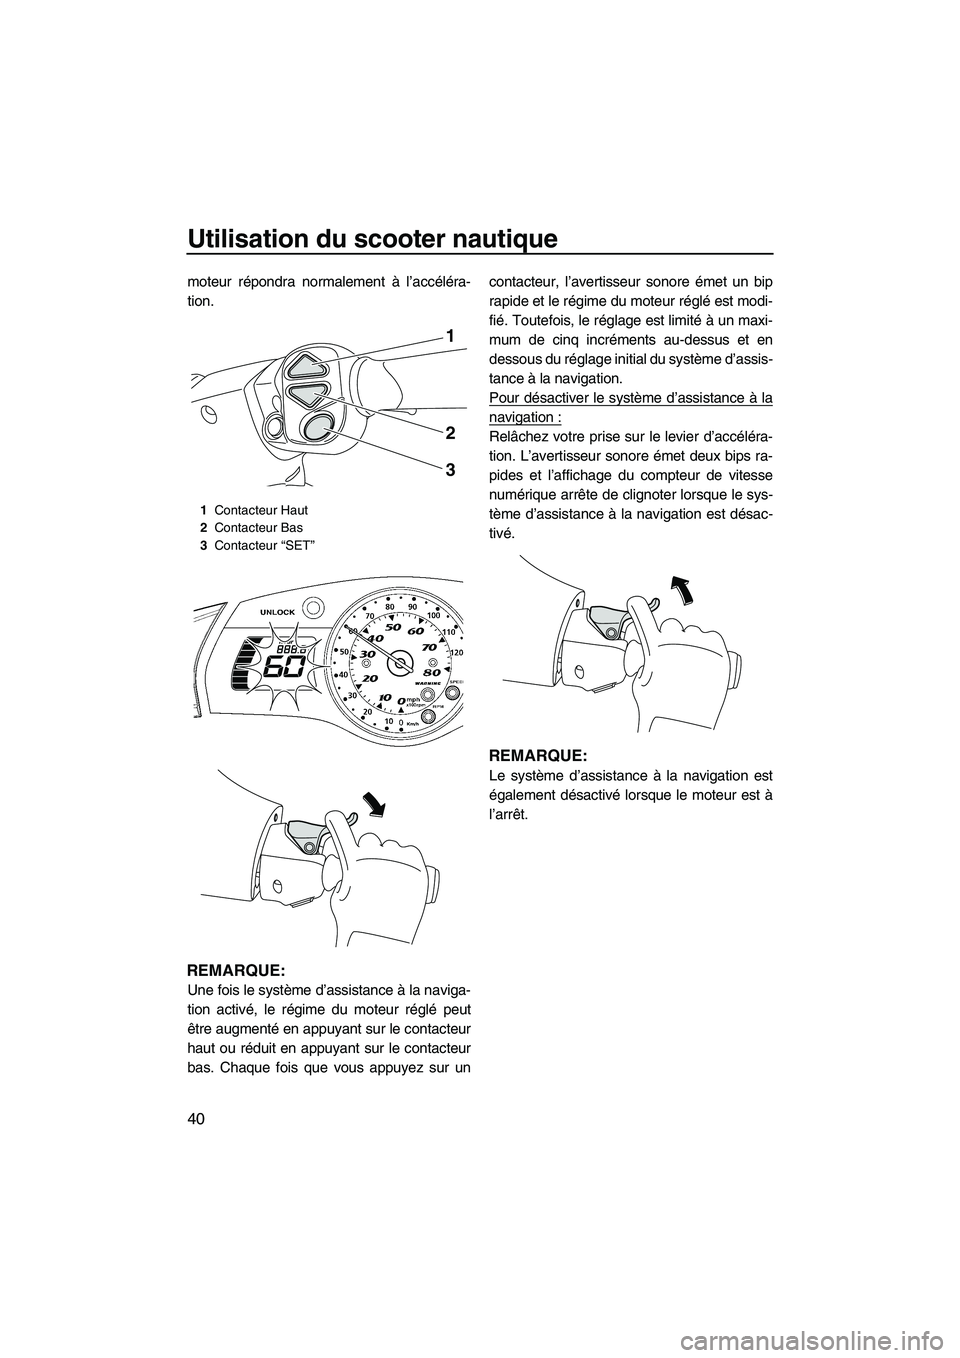 YAMAHA SVHO 2011  Notices Demploi (in French) Utilisation du scooter nautique
40
moteur répondra normalement à l’accéléra-
tion.
REMARQUE:
Une fois le système d’assistance à la naviga-
tion activé, le régime du moteur réglé peut
êt